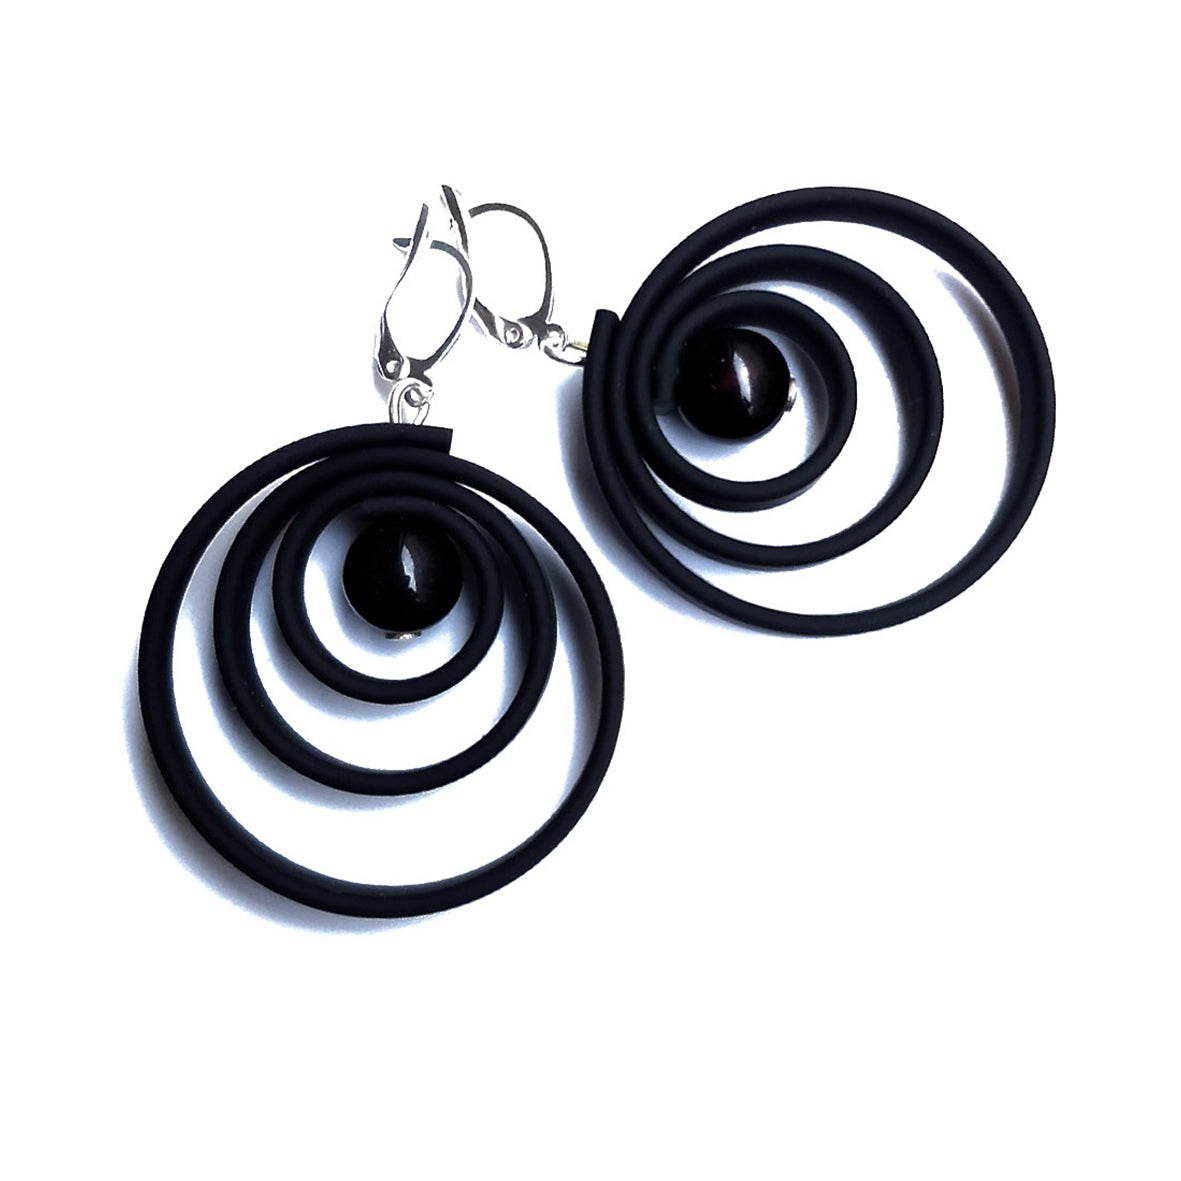 ORCHIDEE earrings Black